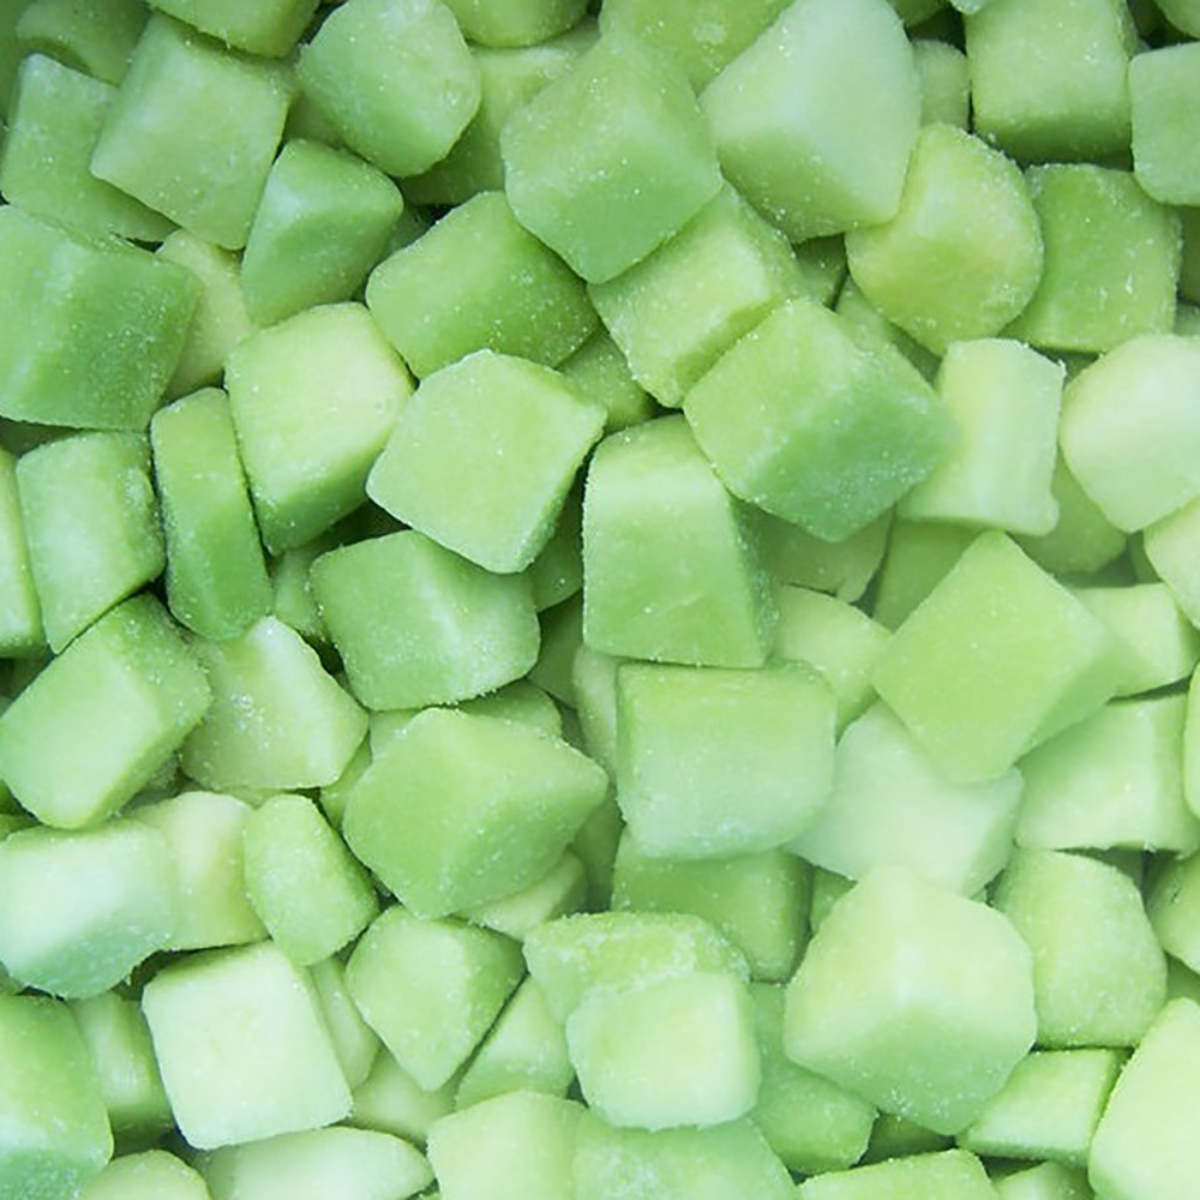 IQF Green Melon